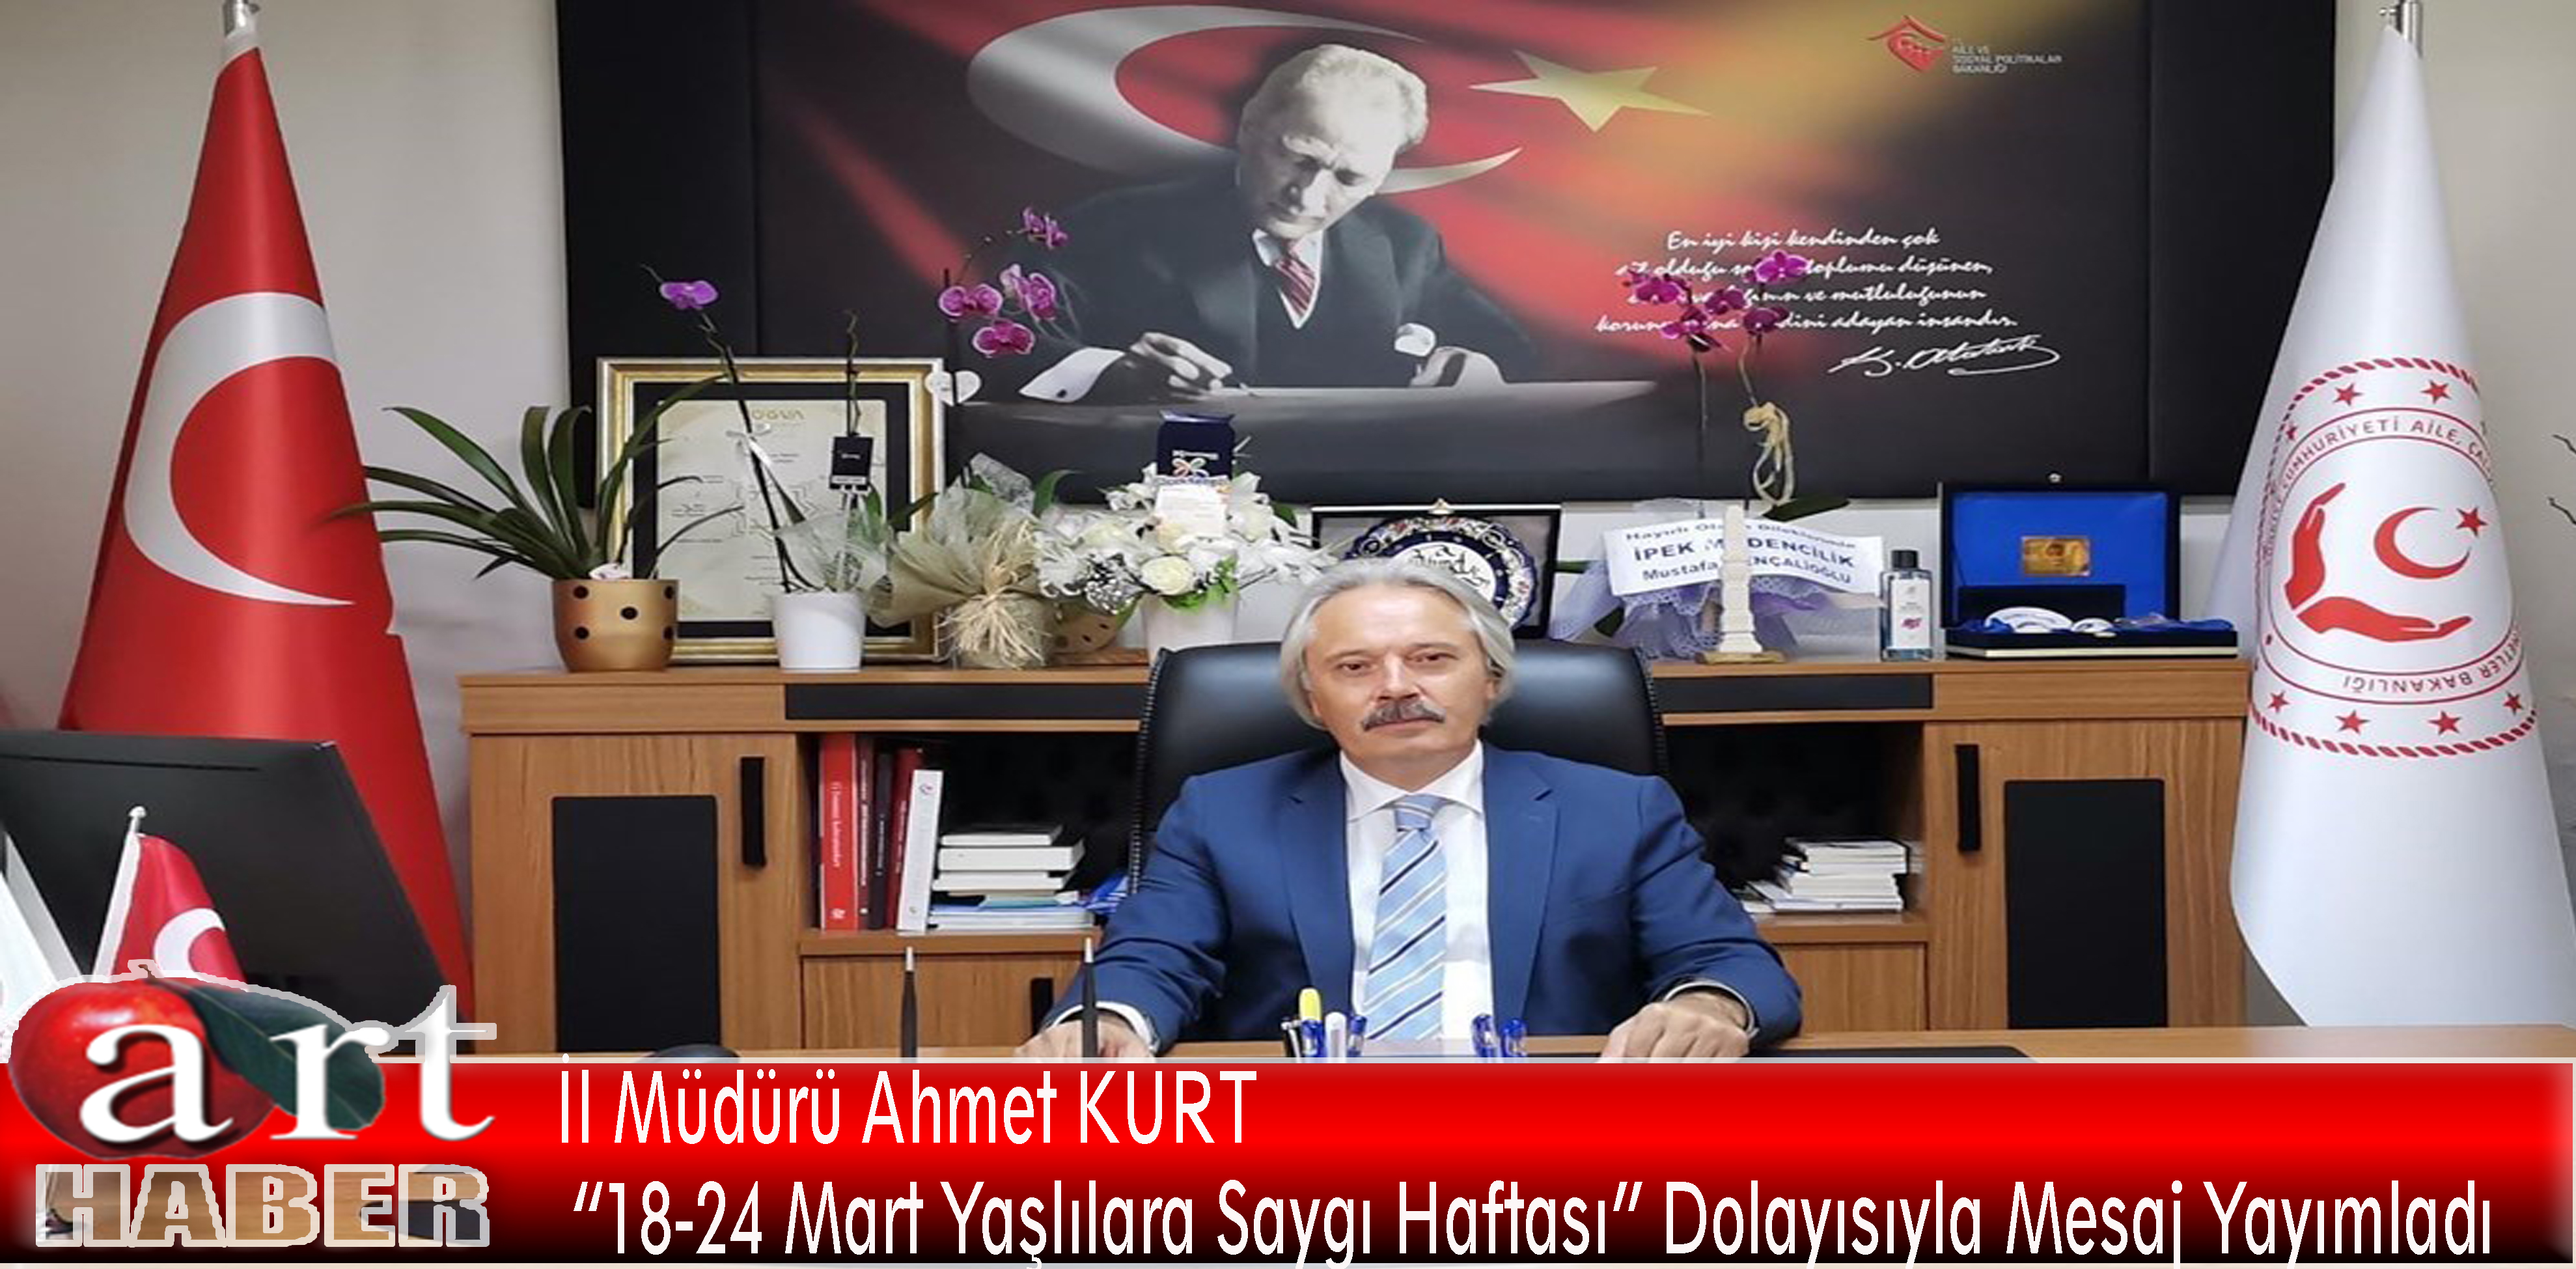 İl Müdürü Ahmet KURT “18-24 Mart Yaşlılara Saygı Haftası” Dolayısıyla Mesaj Yayımladı